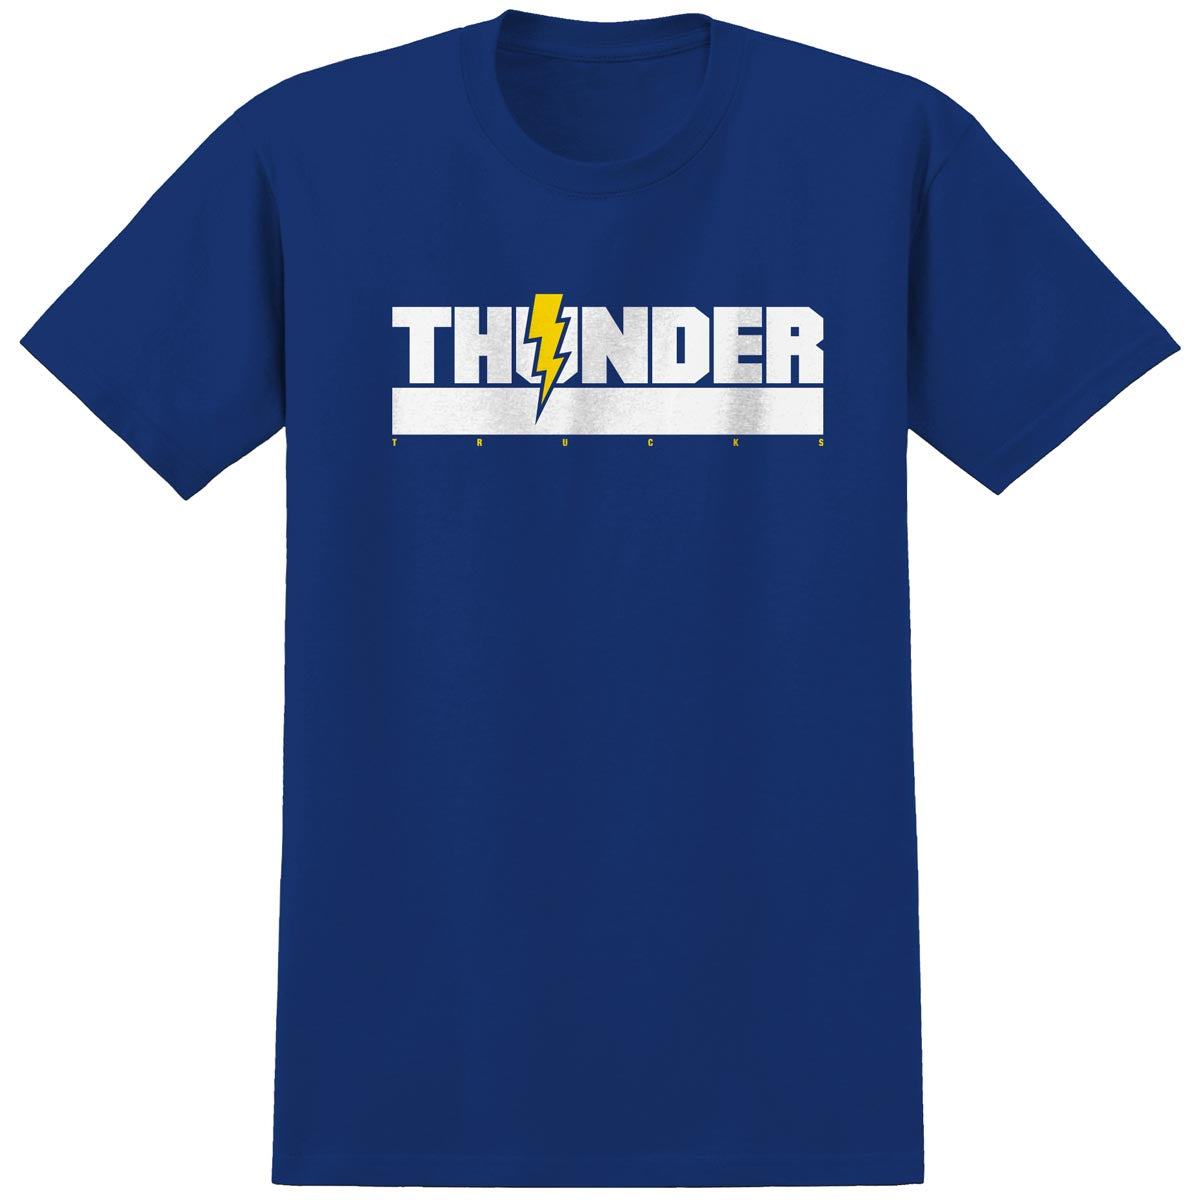 Thunder Varsity T-Shirt - Royal image 1